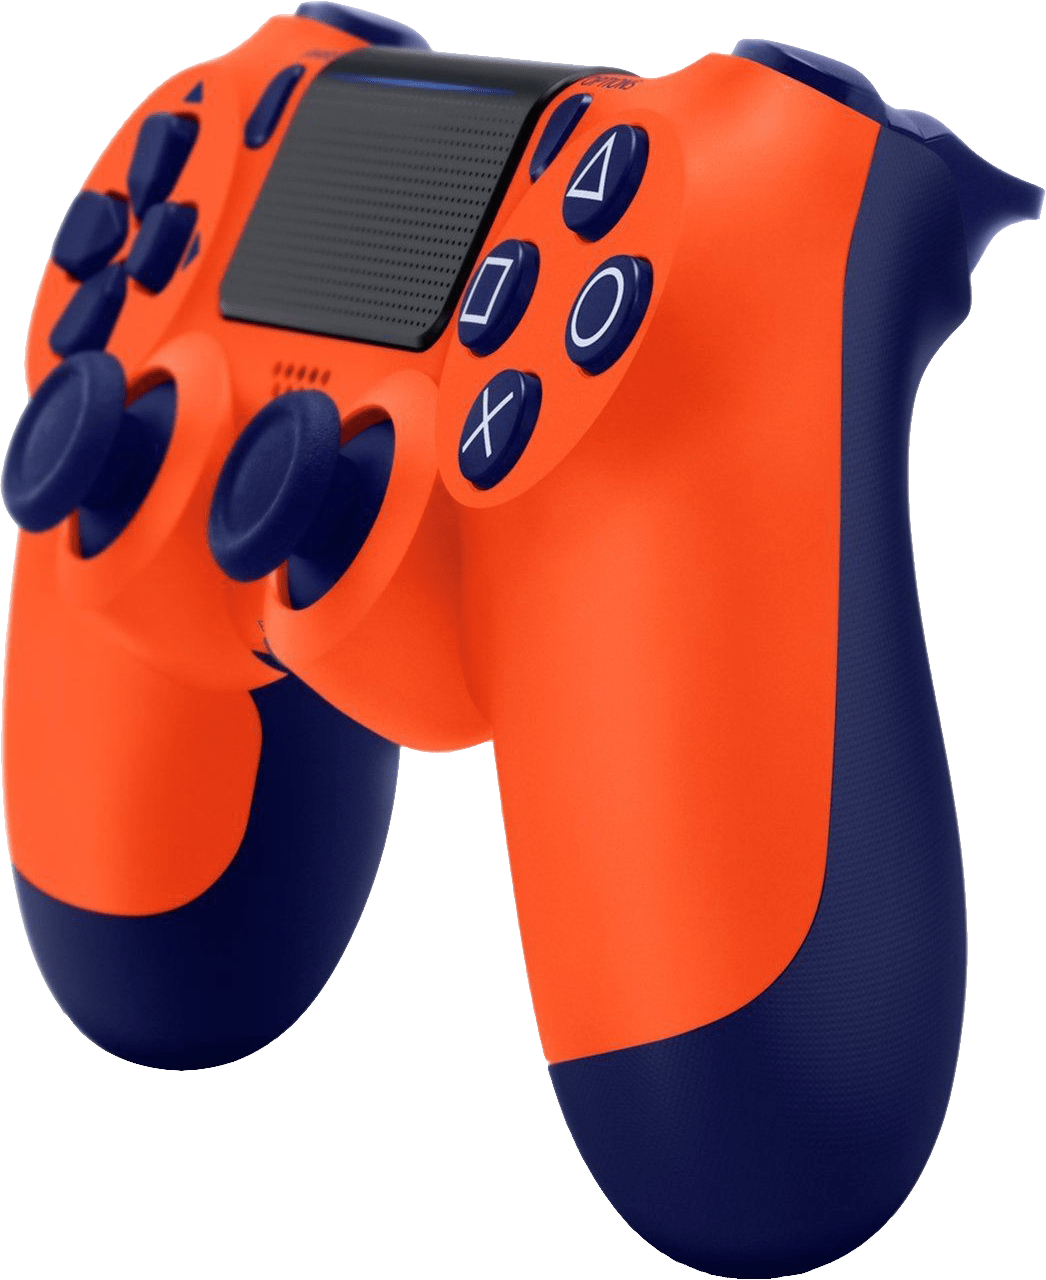 Playstation 4 Dualshock 4 Controller V2 - Dualshock 4 Sunset Orange (1046x1280)